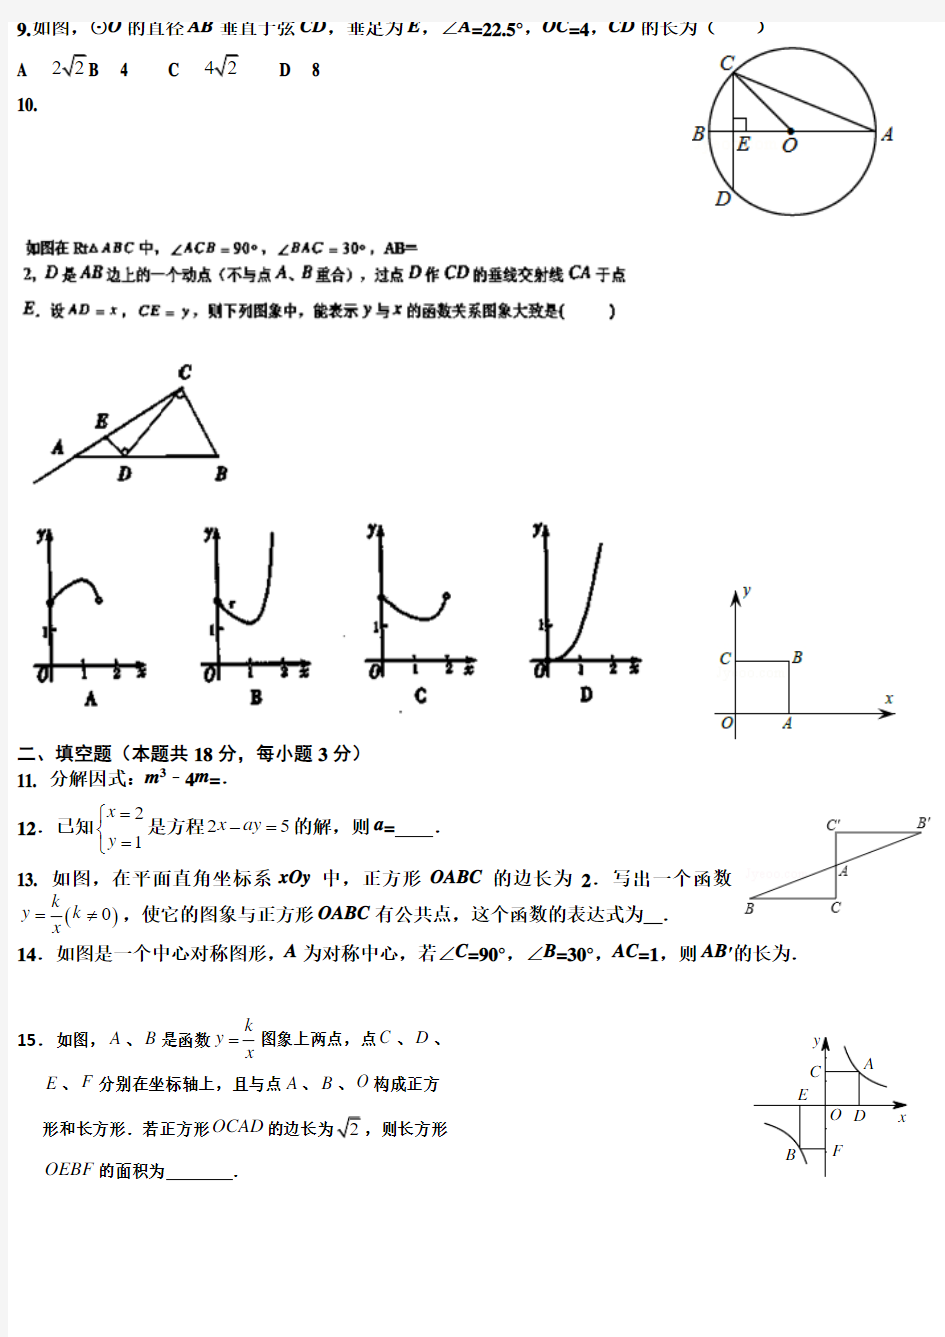 2014-2015北京中考数学模拟题3(中考题型29道)